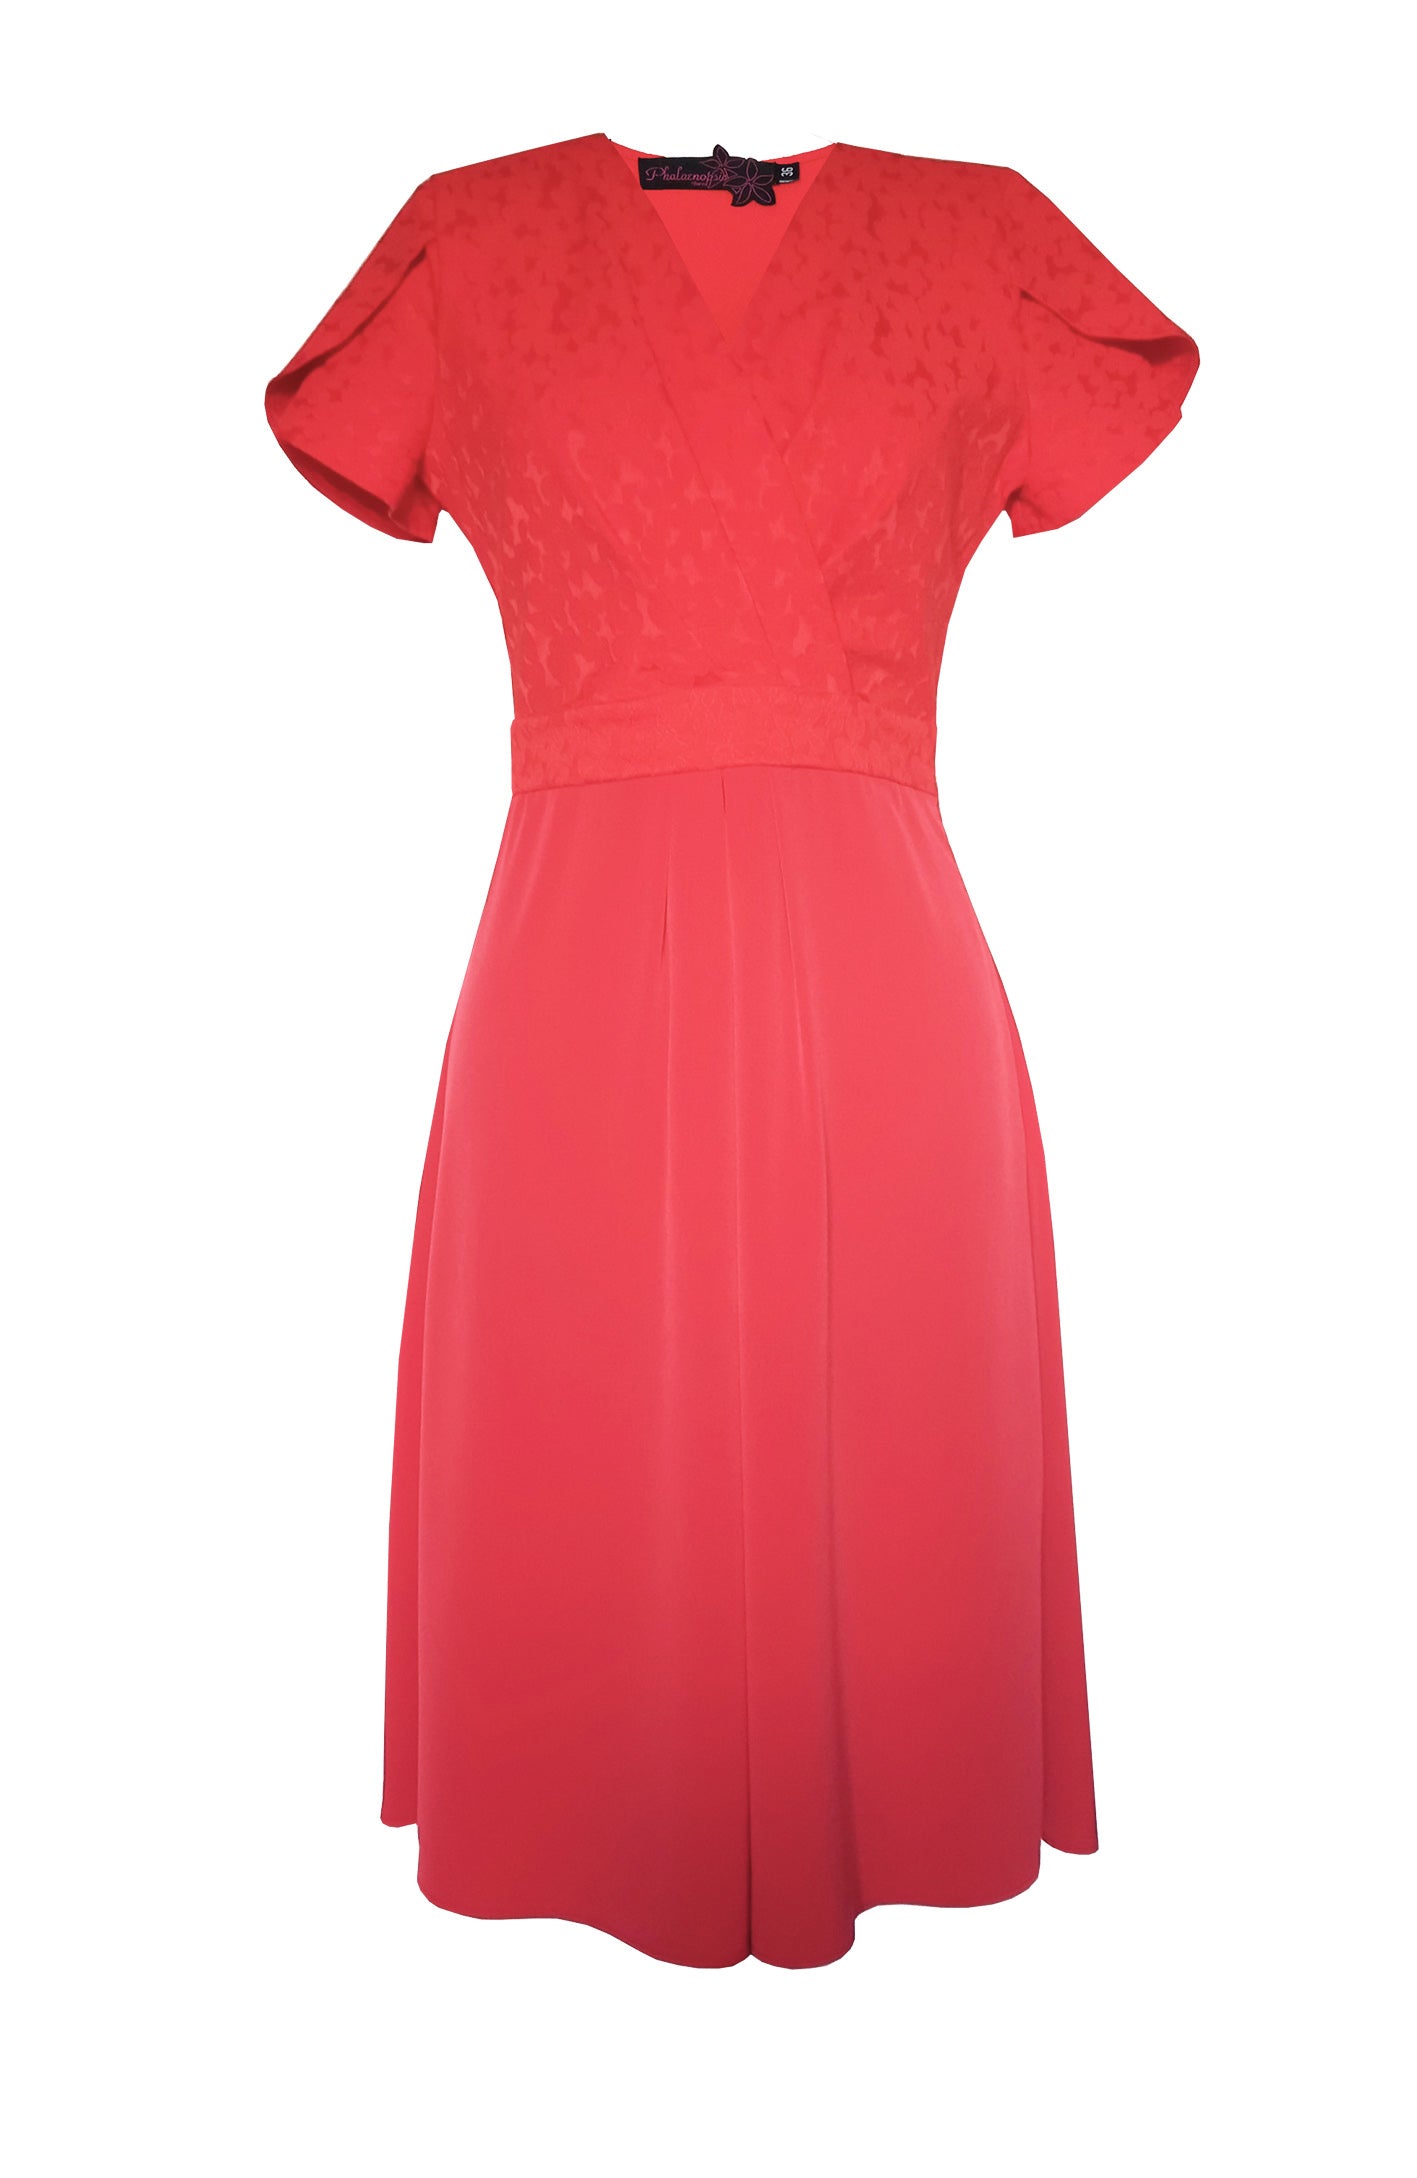 Red XENA dress - Last piece!